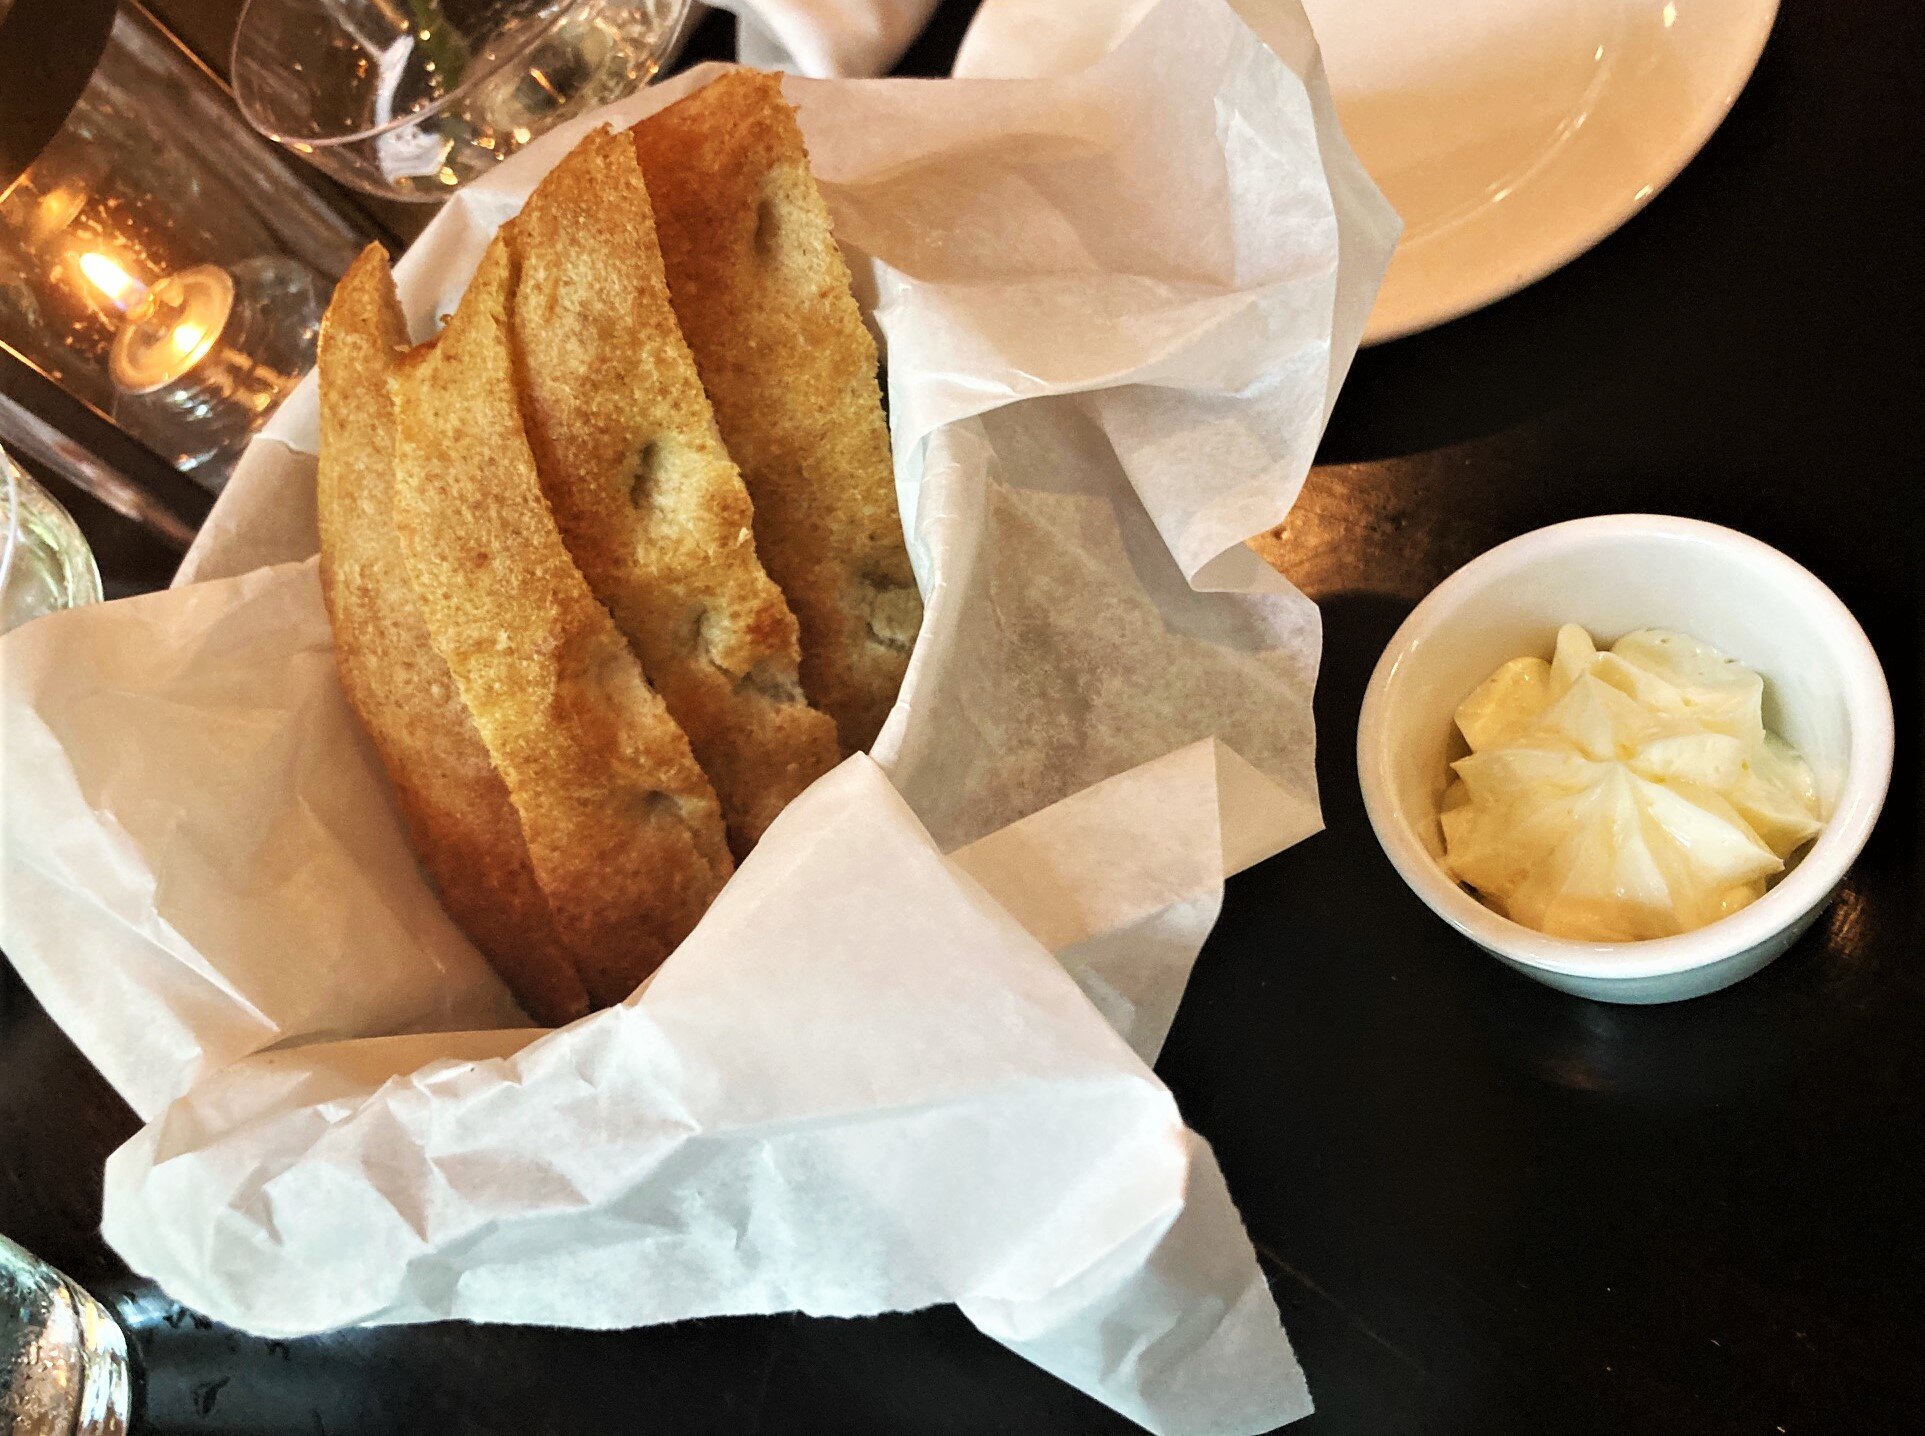 Bread basket w/butter